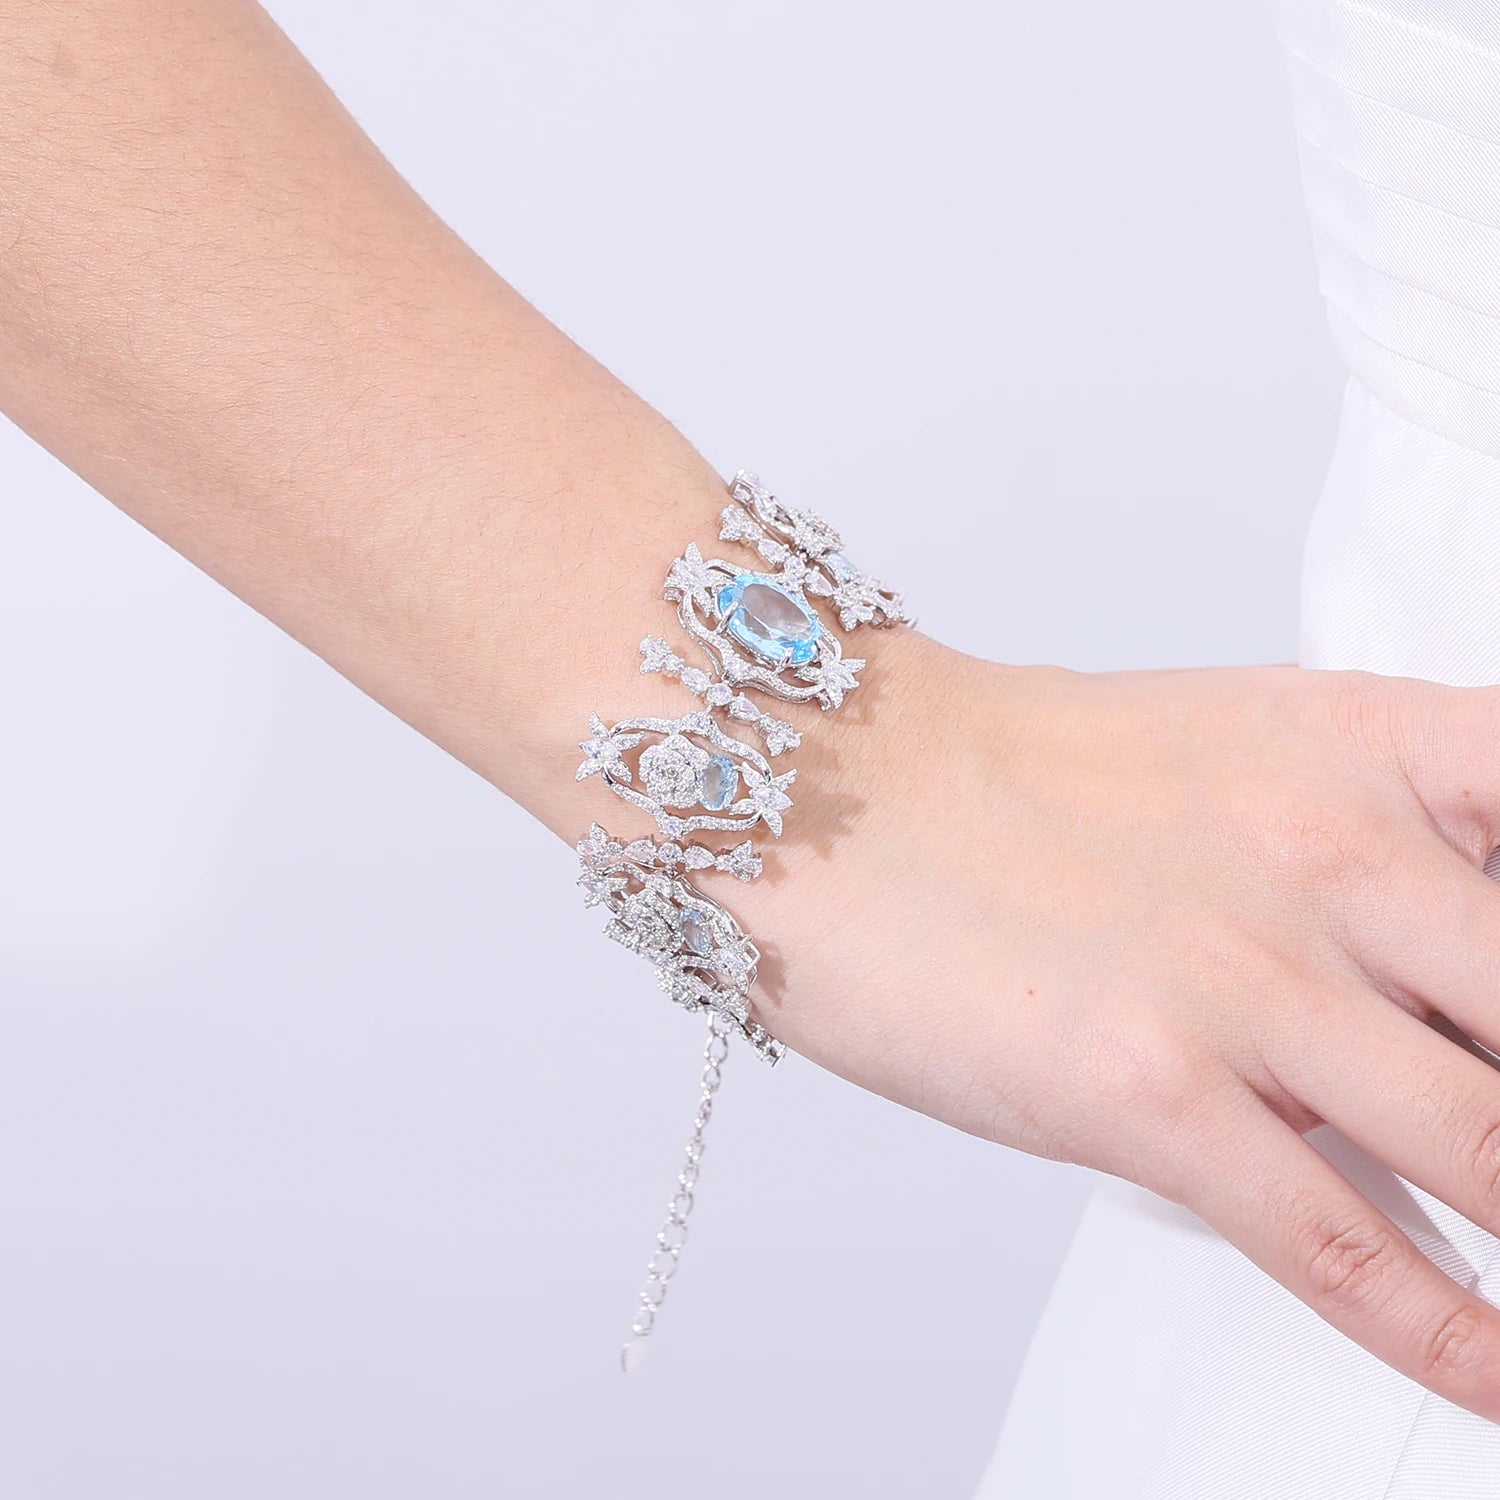 GEM'S BALLET Luxury Gemstone Bracelet Natural Sky Blue Topaz Vintage Bracelet Bangle in 925 Sterling Silver Prom Bridesmaid gift